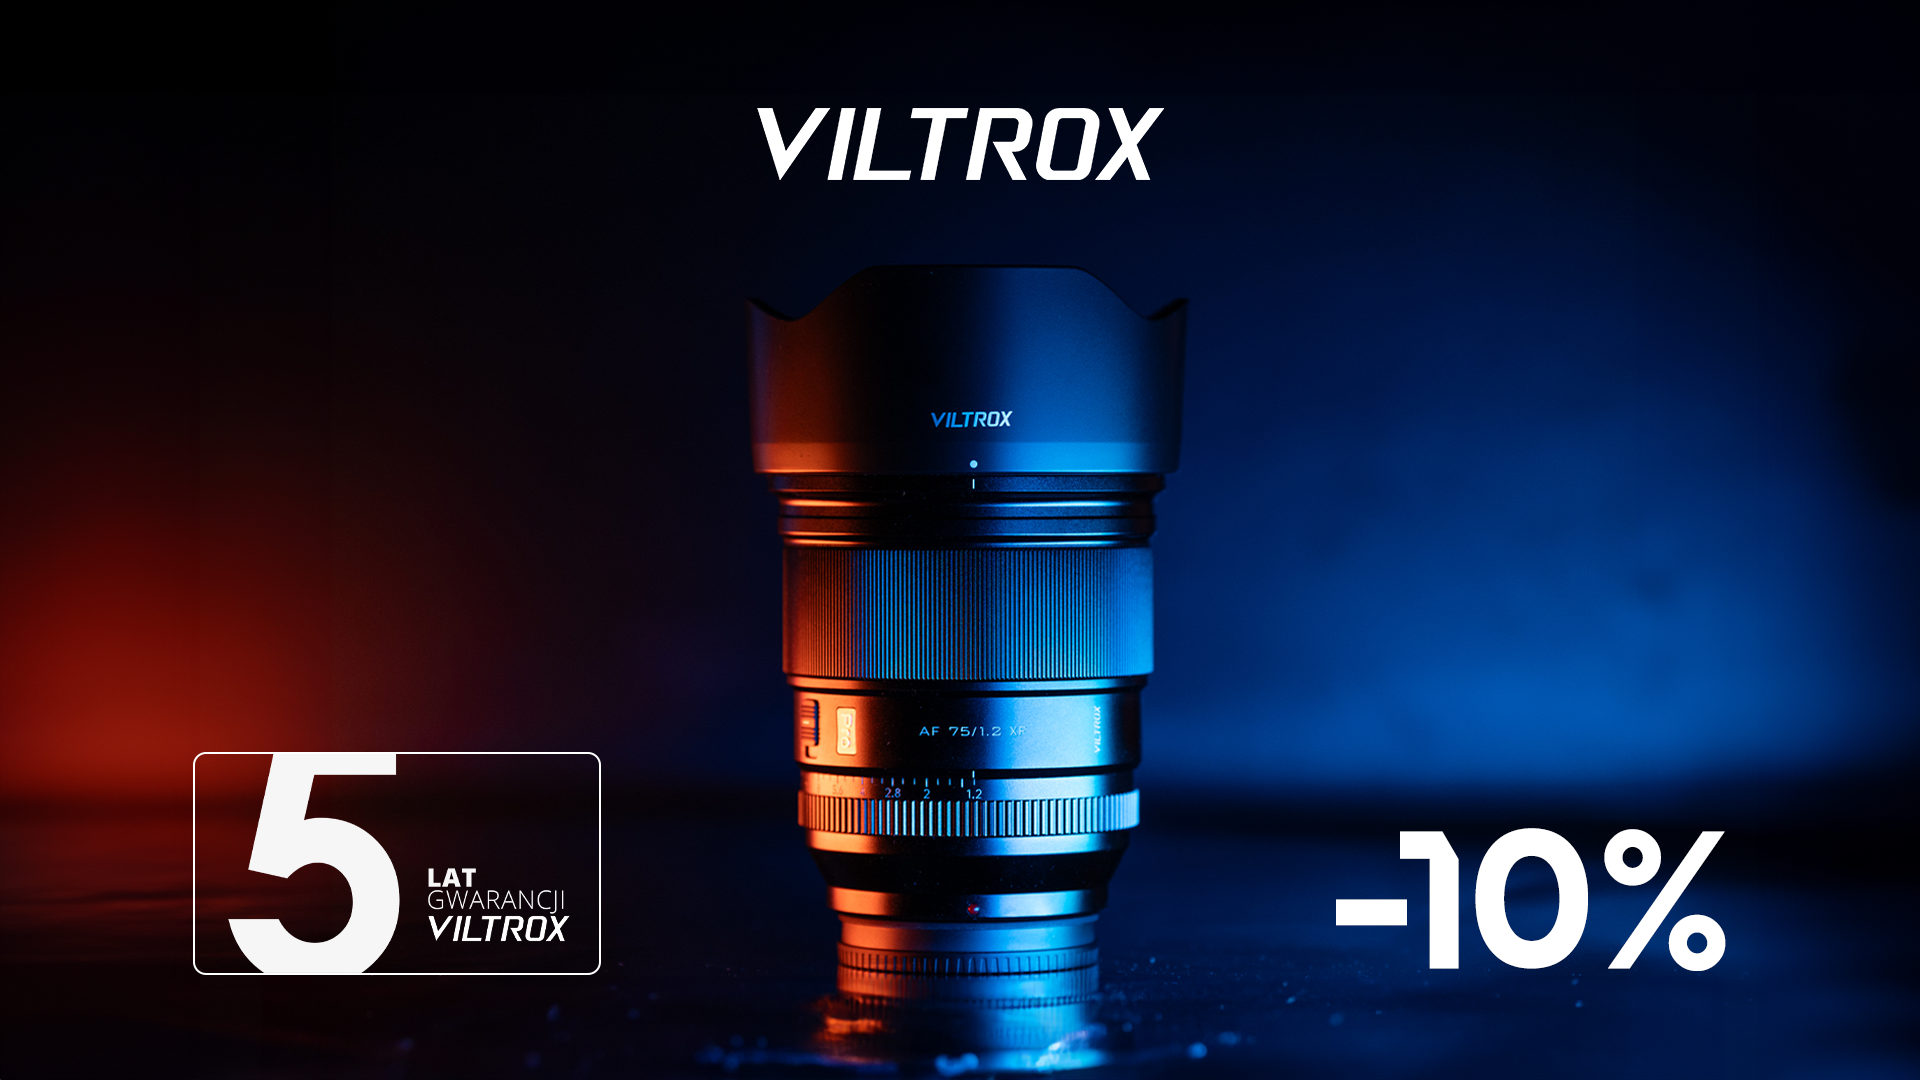 Viltrox: Chińska Marka Obiektywów Zdobywająca Świat Fotografii do połowy stycznia w promocji 10% taniej!